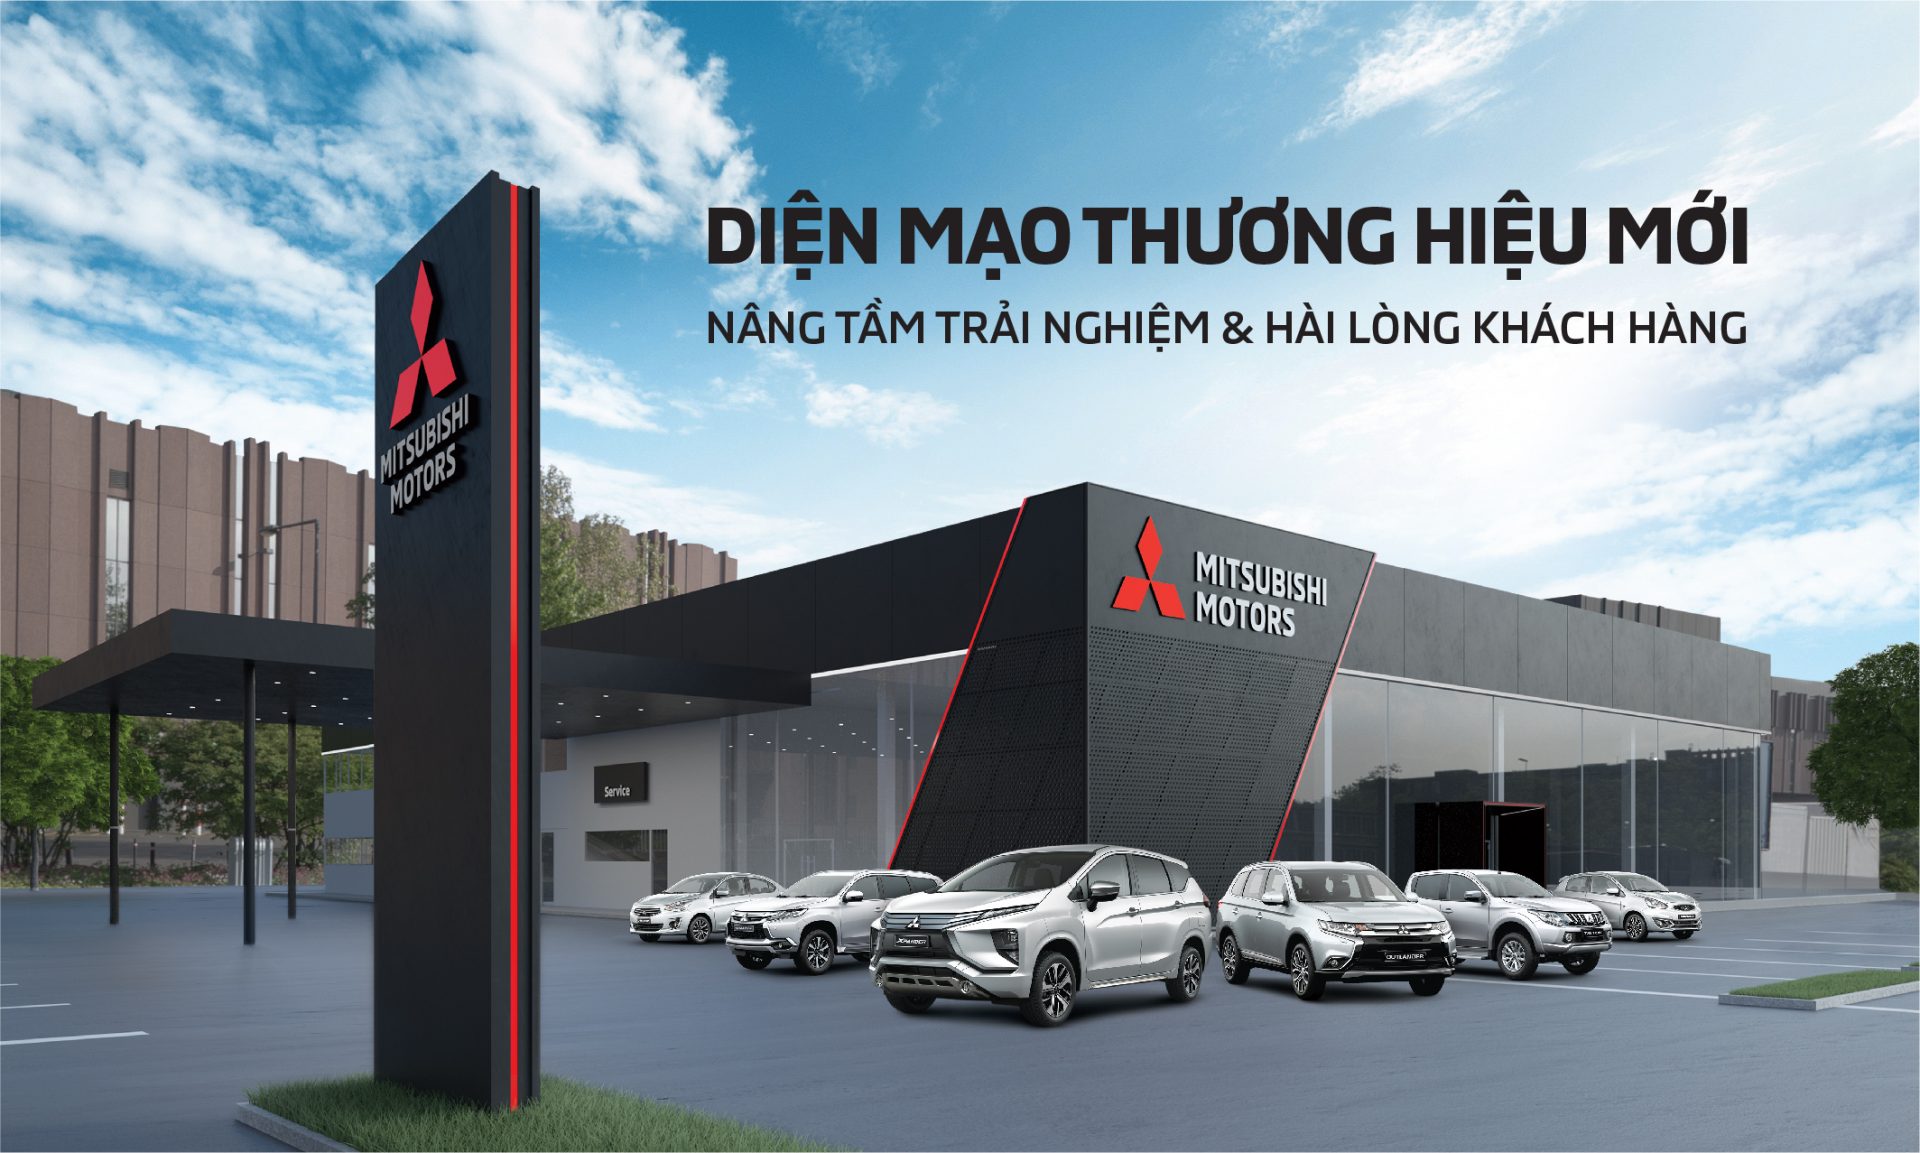 [VMS2018] Mitsubishi Motors Việt Nam đưa đến thông điệp “Drive your ambition – Dẫn lối khát vọng”, sẵn sàng tiếp bước hành trình mới